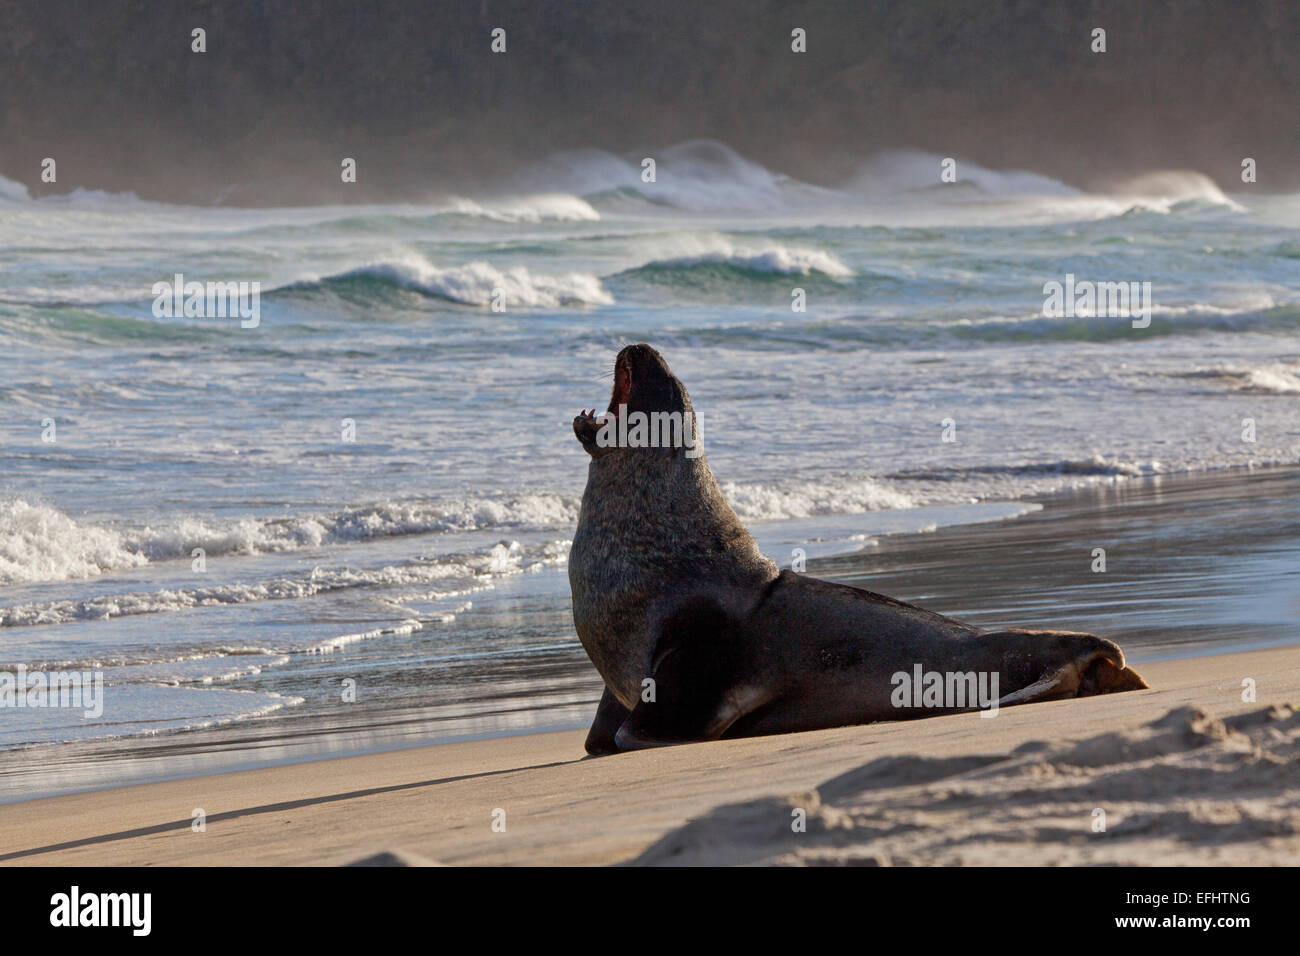 Lion de mer de Nouvelle-Zélande sur la plage, Phocarctos hookeri, péninsule d'Otago, Otago, île du Sud, Nouvelle-Zélande Banque D'Images